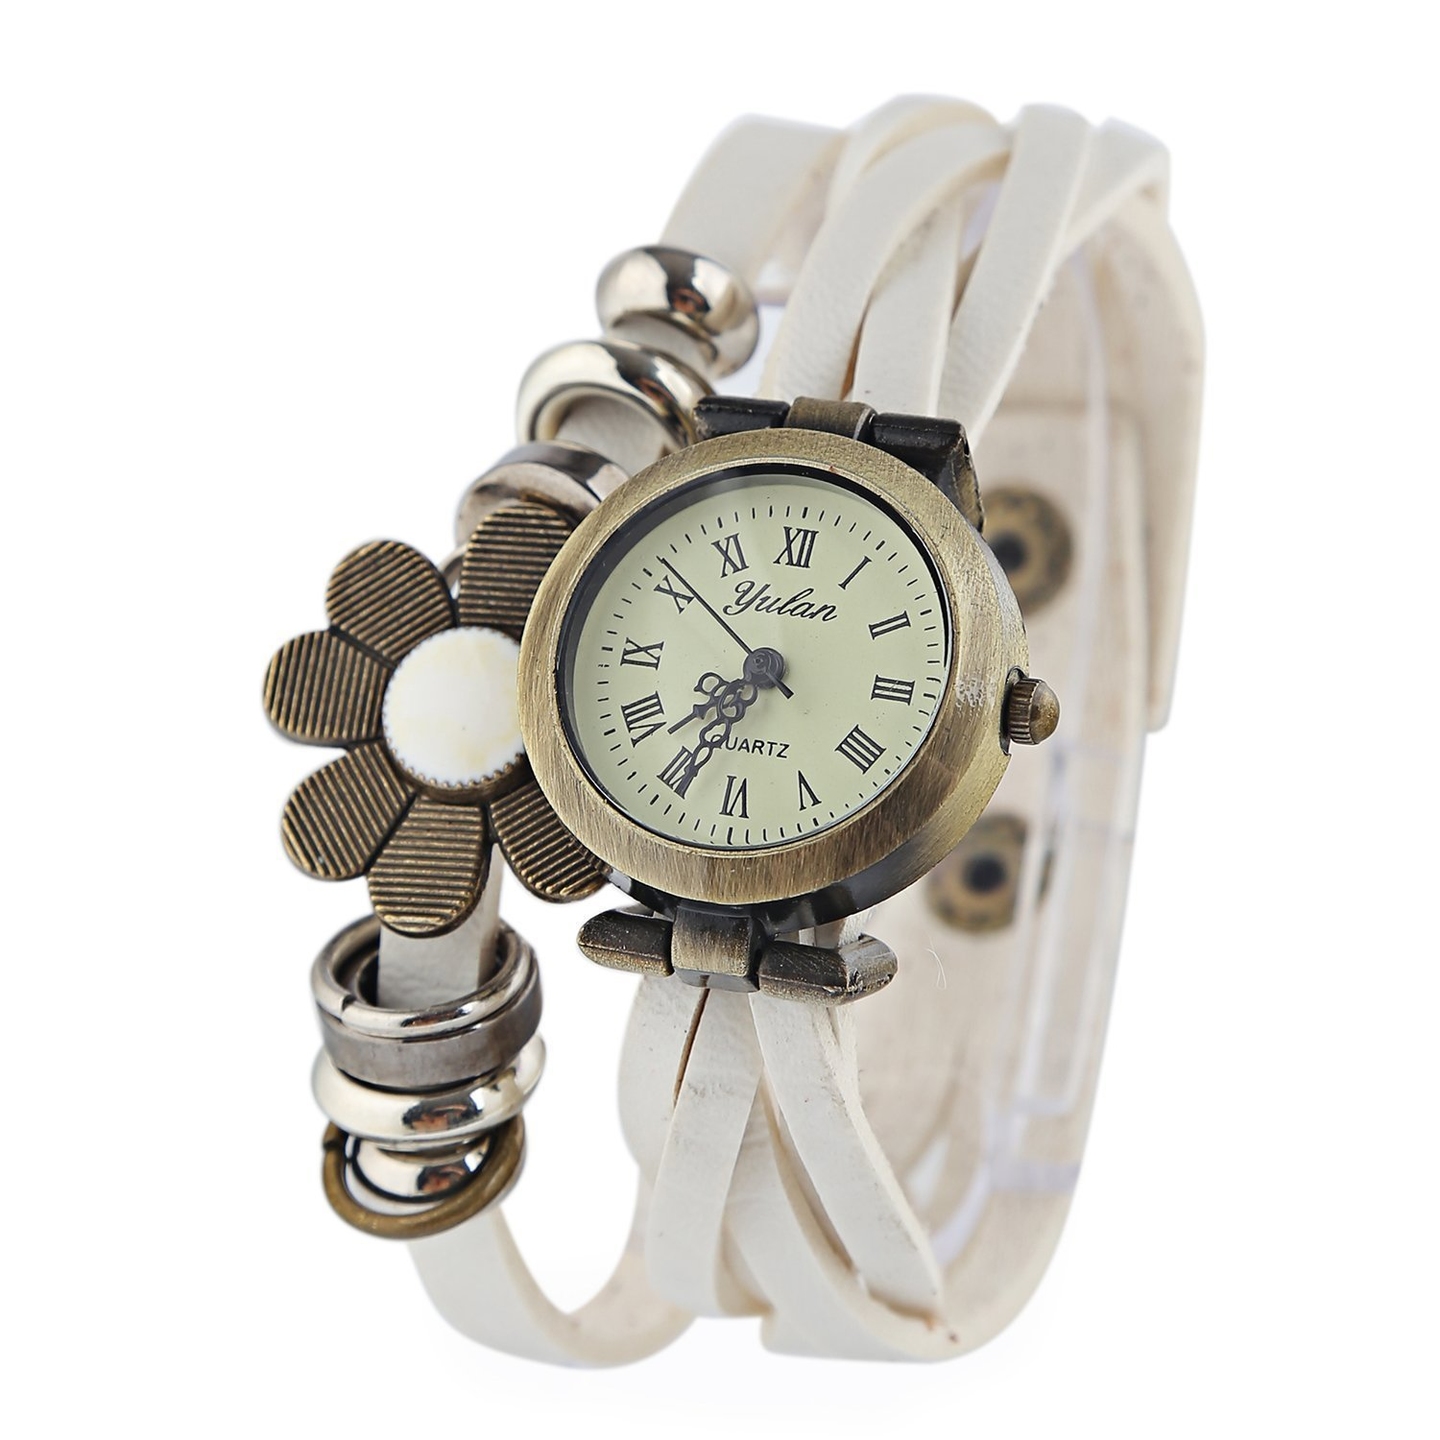 Ashiana stylish leather flower bracelet style watch - White